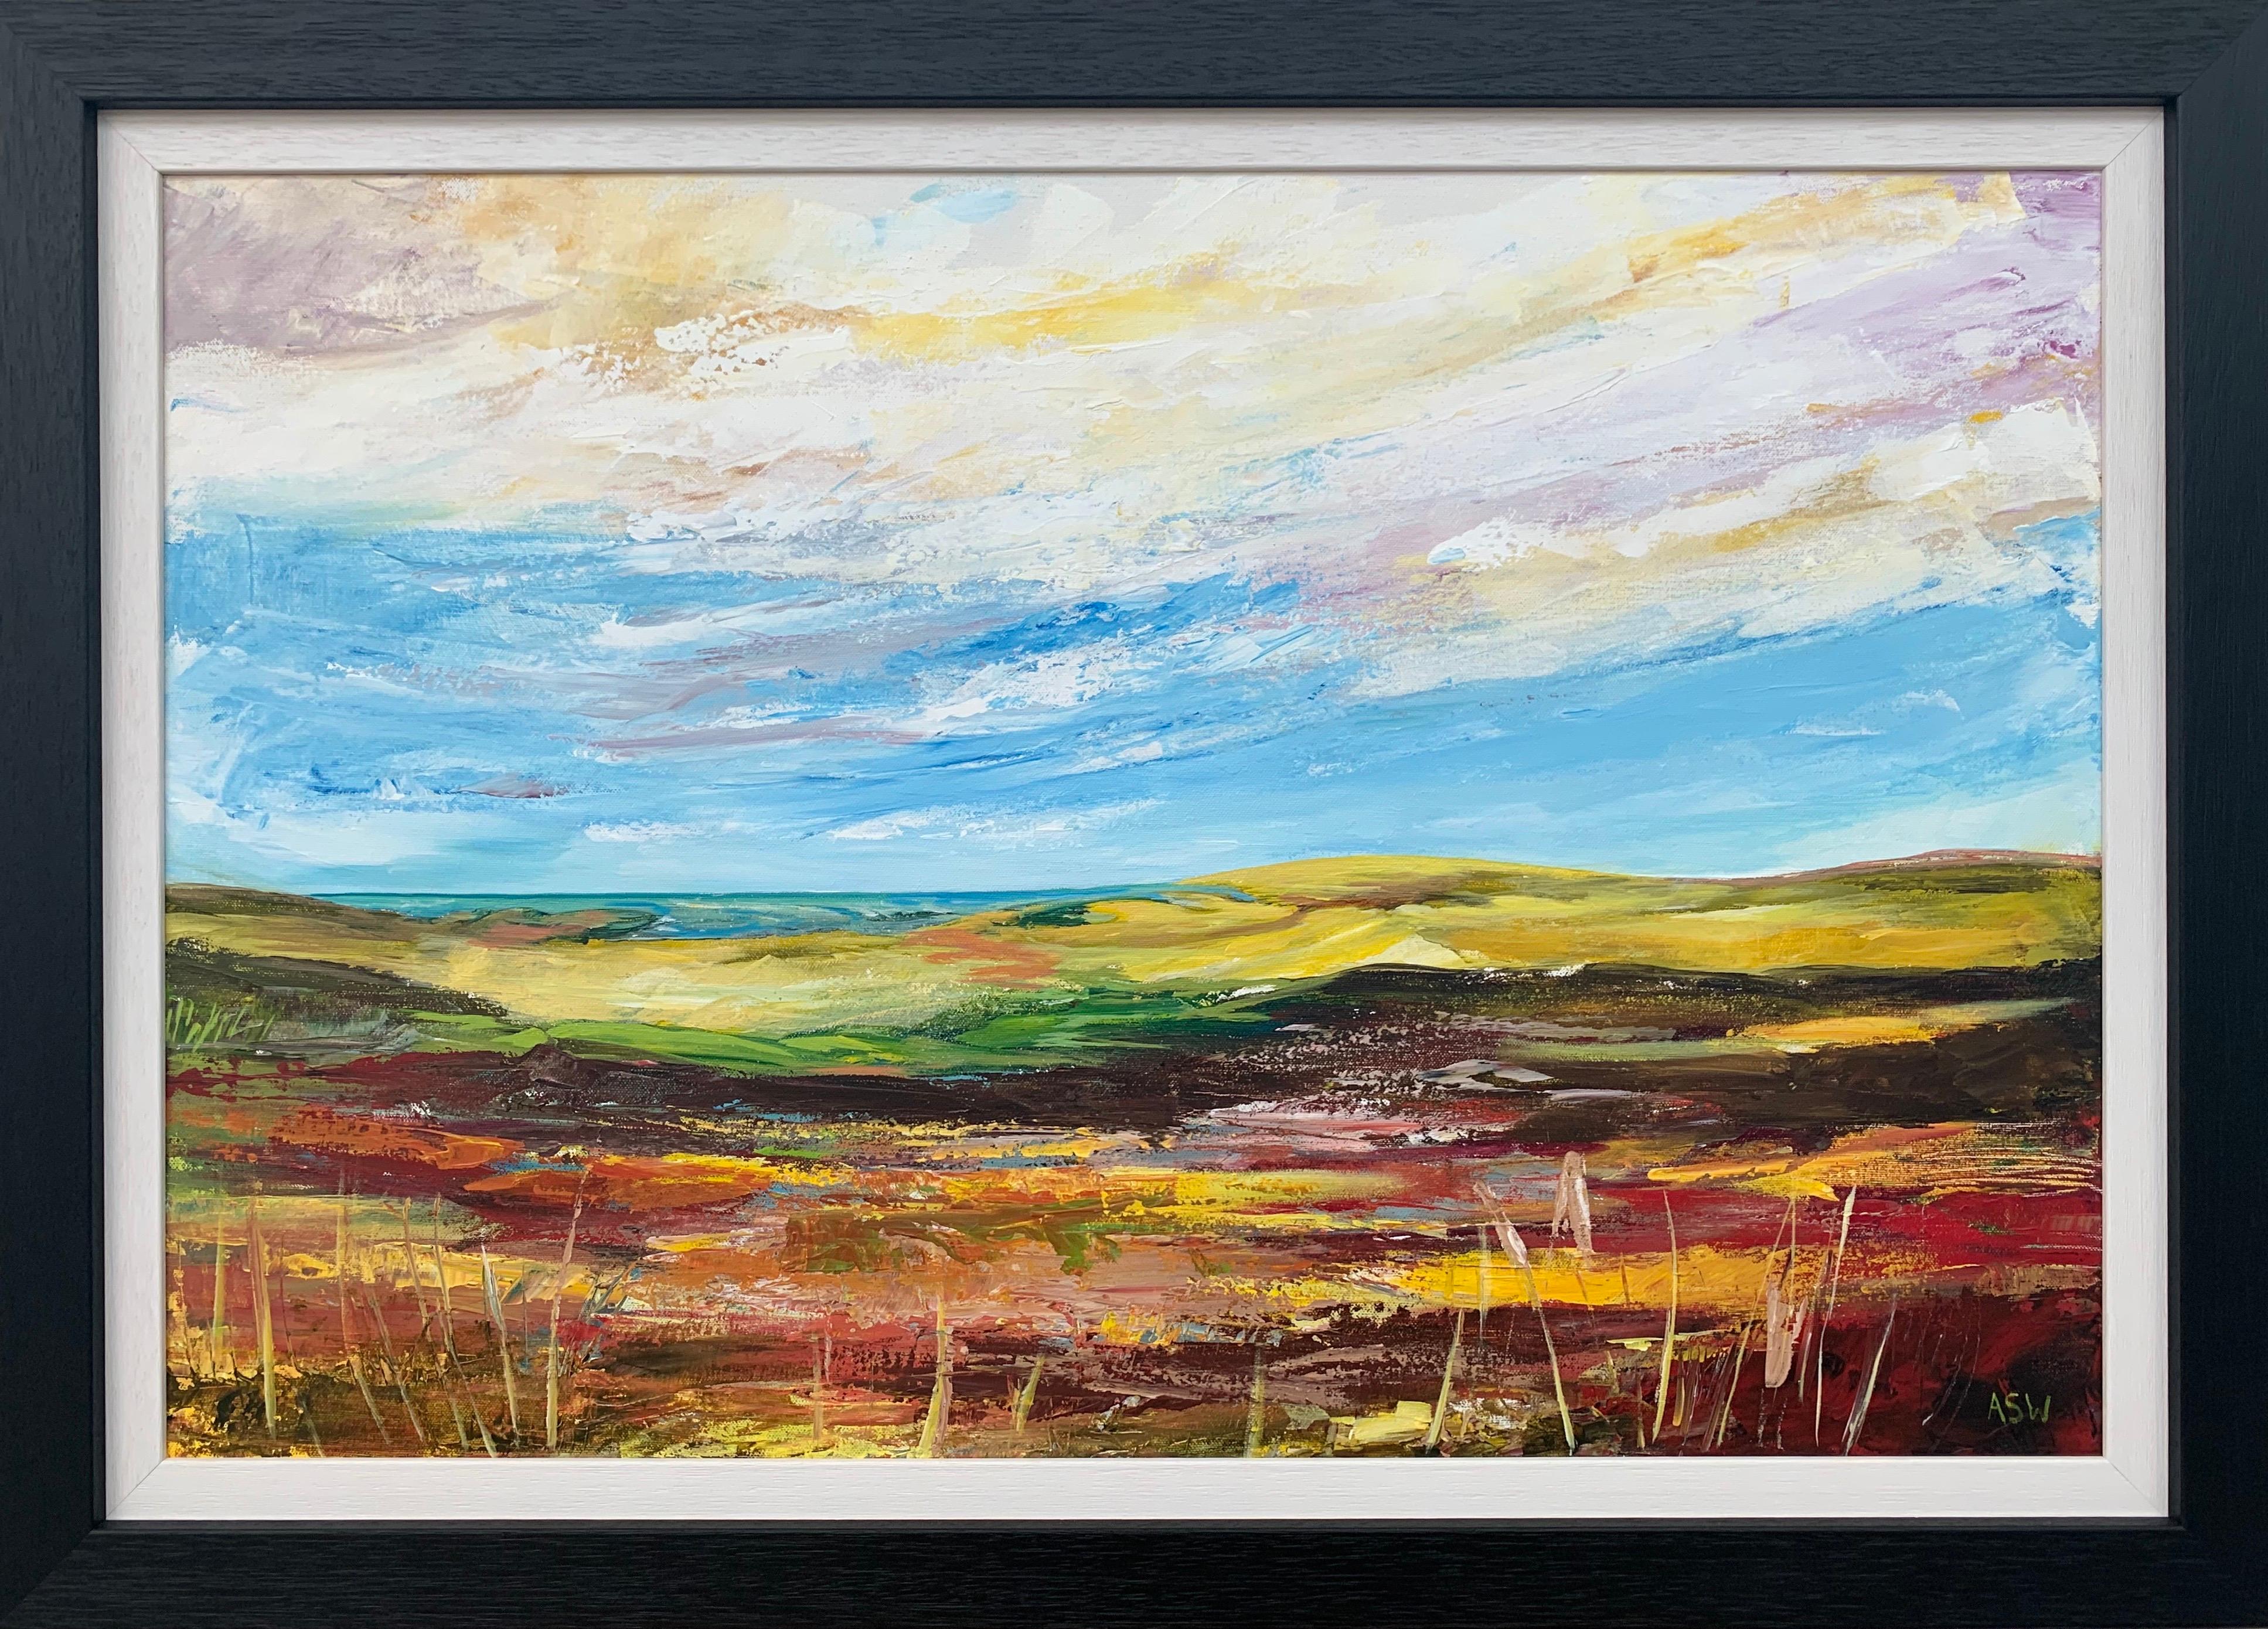 Peinture de paysage abstrait et colorée d'un artiste contemporain de la campagne anglaise